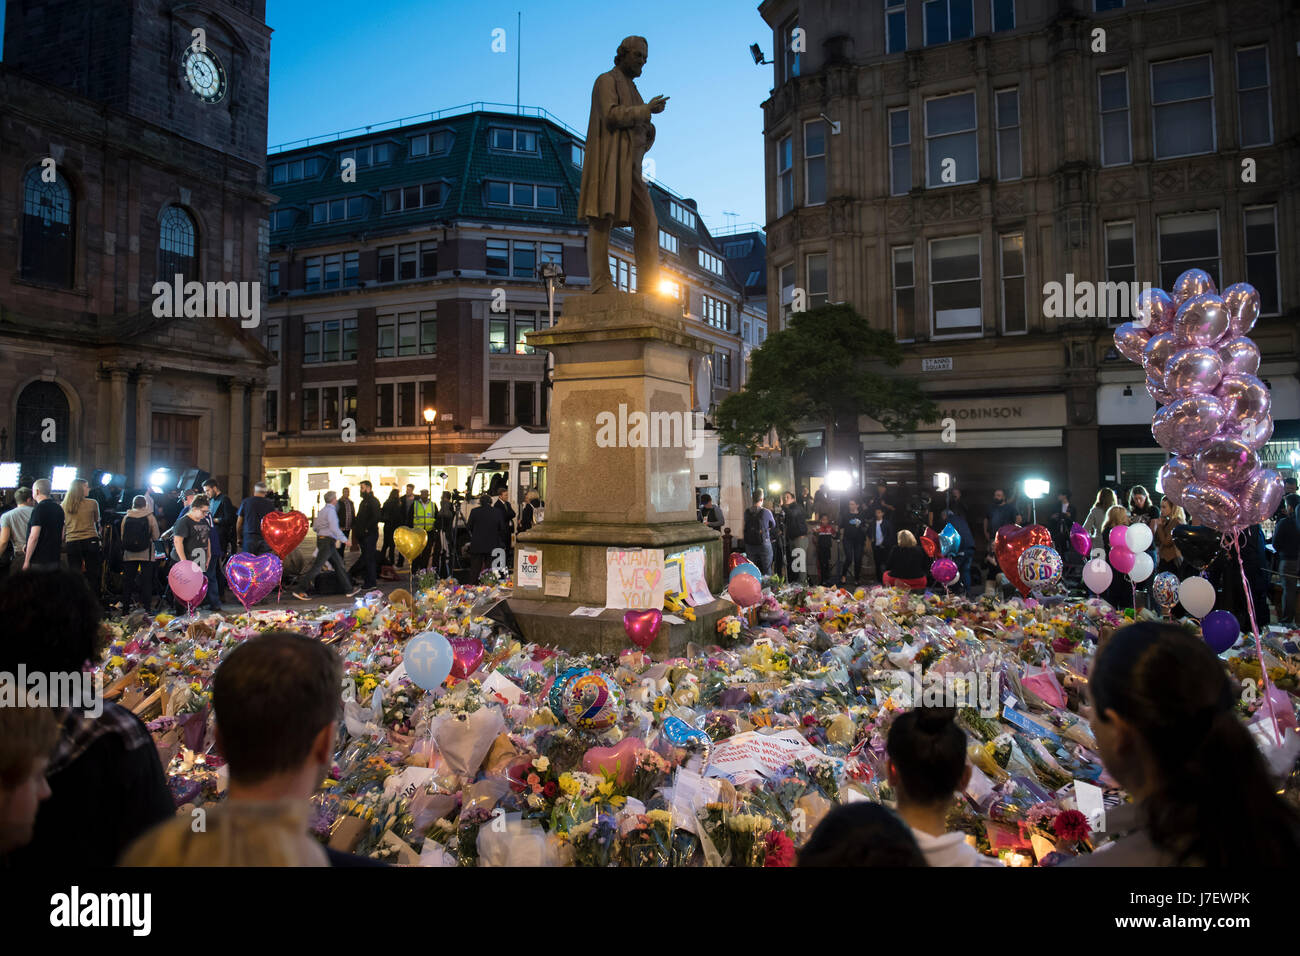 Homenaje floral al atentado terrorista del concierto Ariana Grande del Manchester Arena el 22nd de mayo de 2017. Plaza de Santa Ana, Manchester, Reino Unido Foto de stock